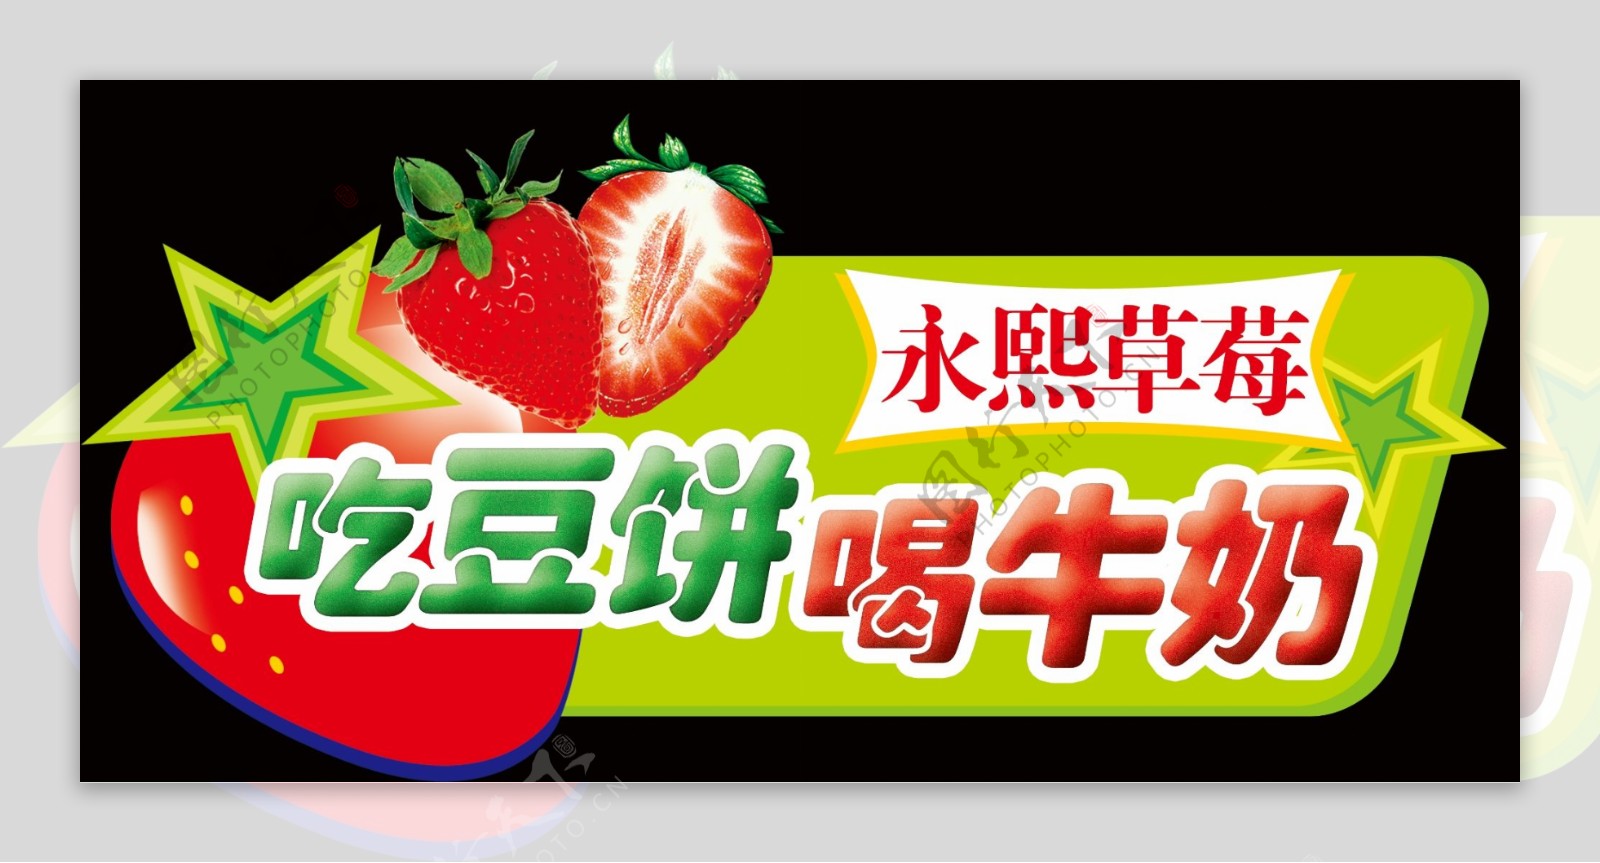 草莓展板图片